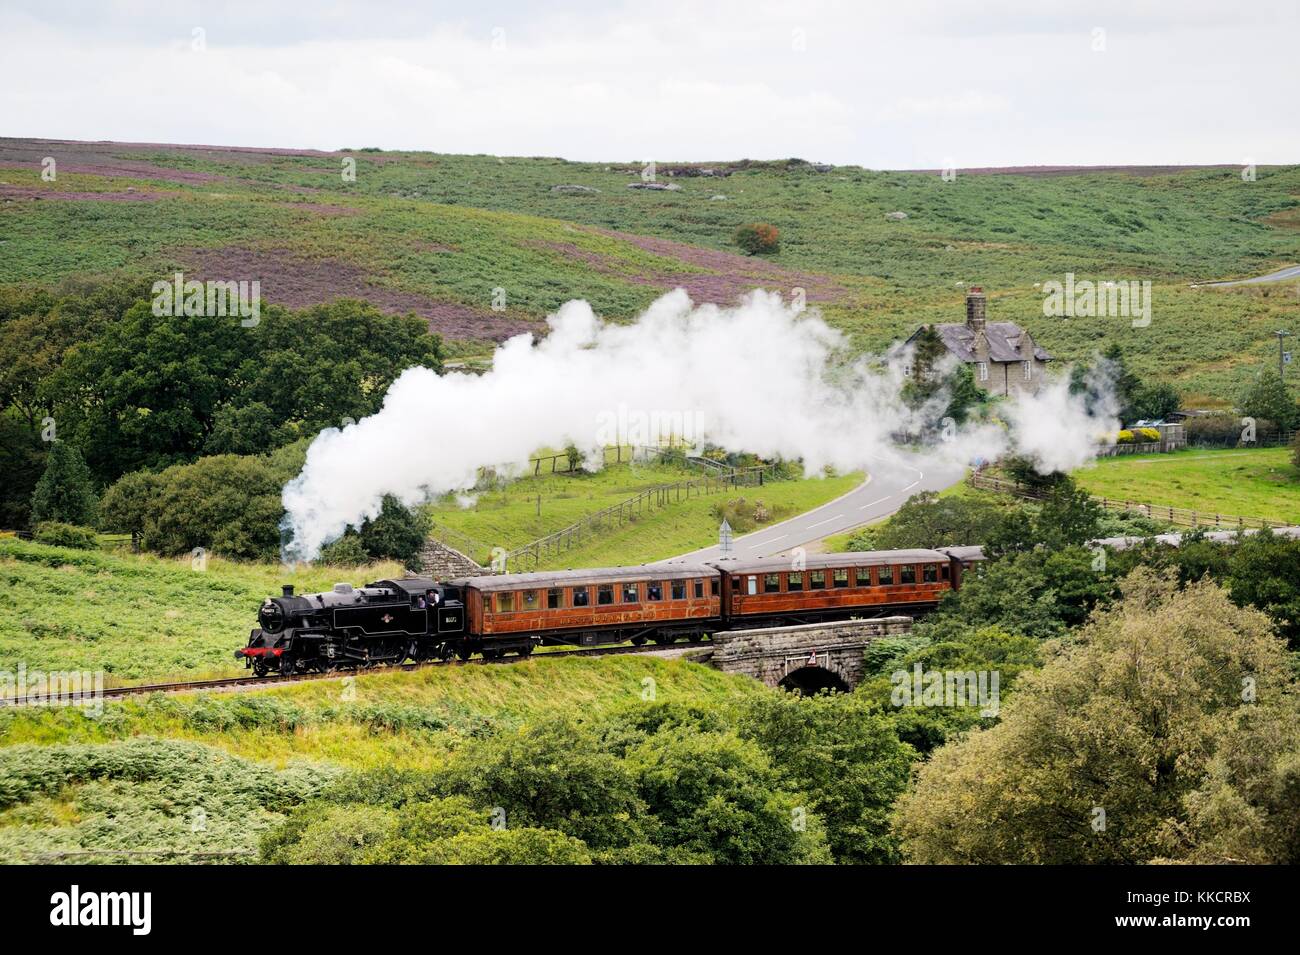 North Yorkshire Moors railway. vintage locomotiva a vapore motore ferroviaria no.80072 tira il treno a sud di goathland, England, Regno Unito Foto Stock